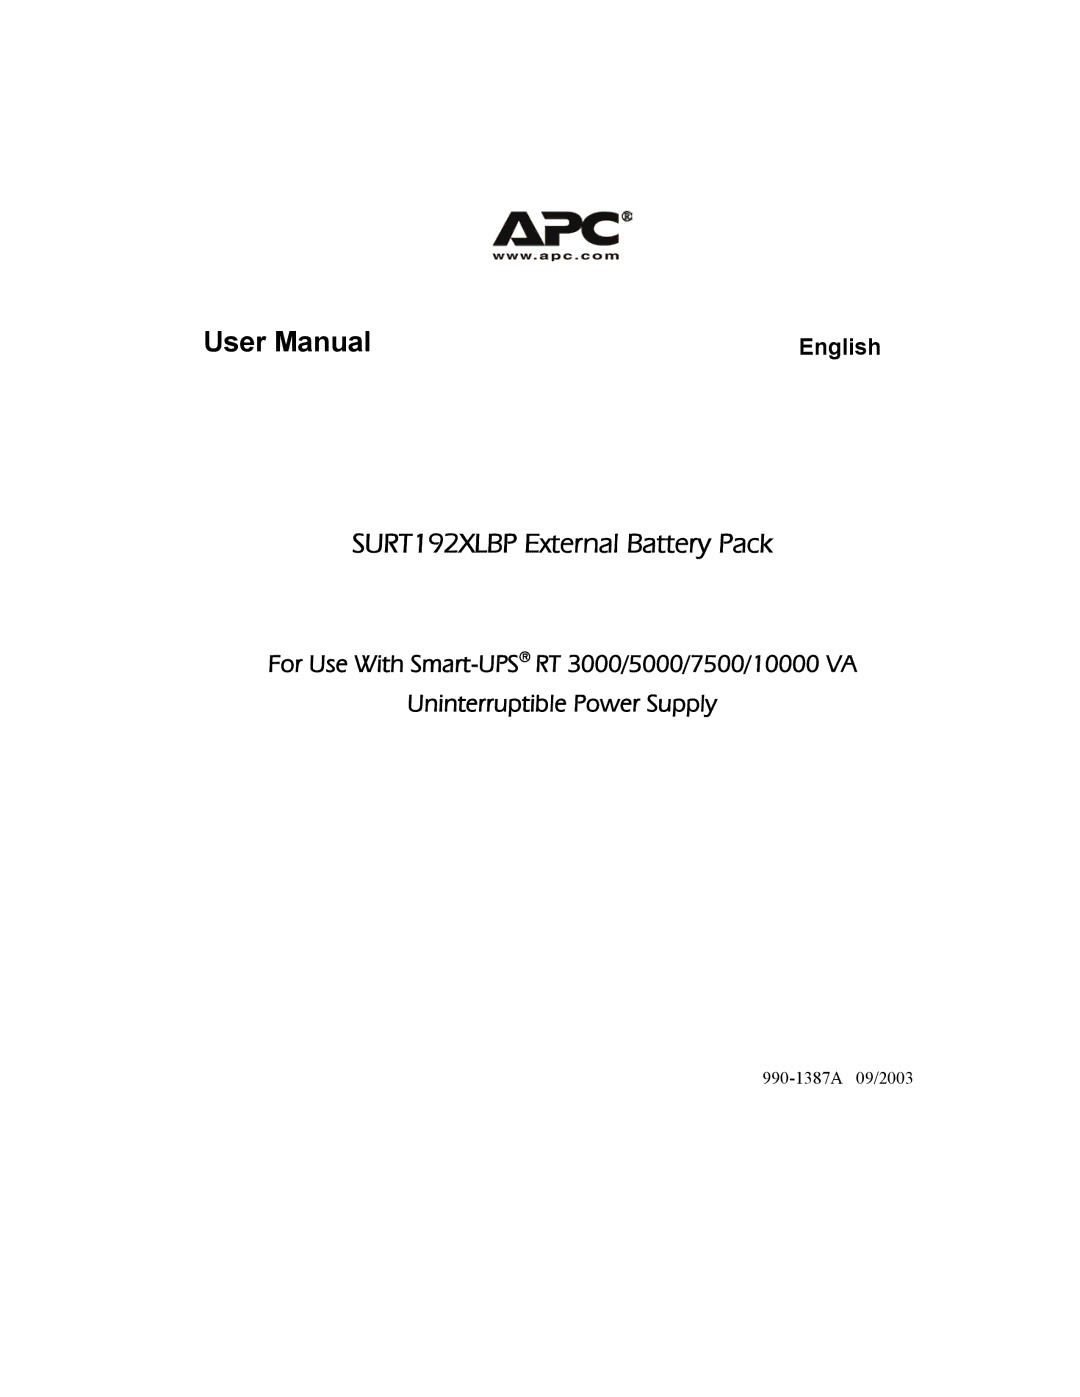 APC 990-1387A user manual SURT192XLBP External Battery Pack 